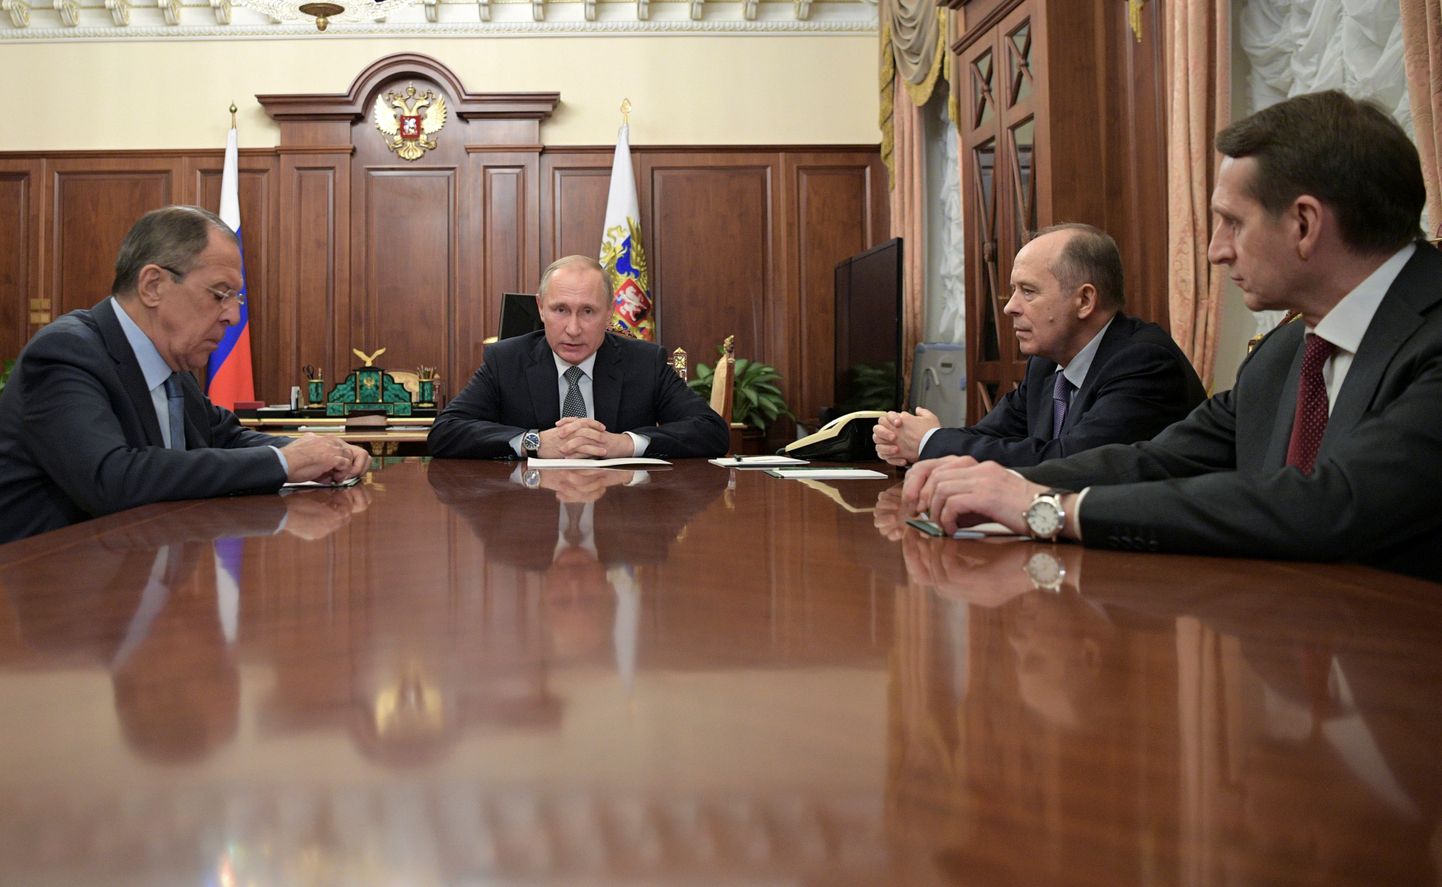 Sergei Narõškin (paremalt) ja Aleksandr Bortnikov president Vladimir Putini vastuvõtul. Vasakul välisminister Sergei Lavrov.